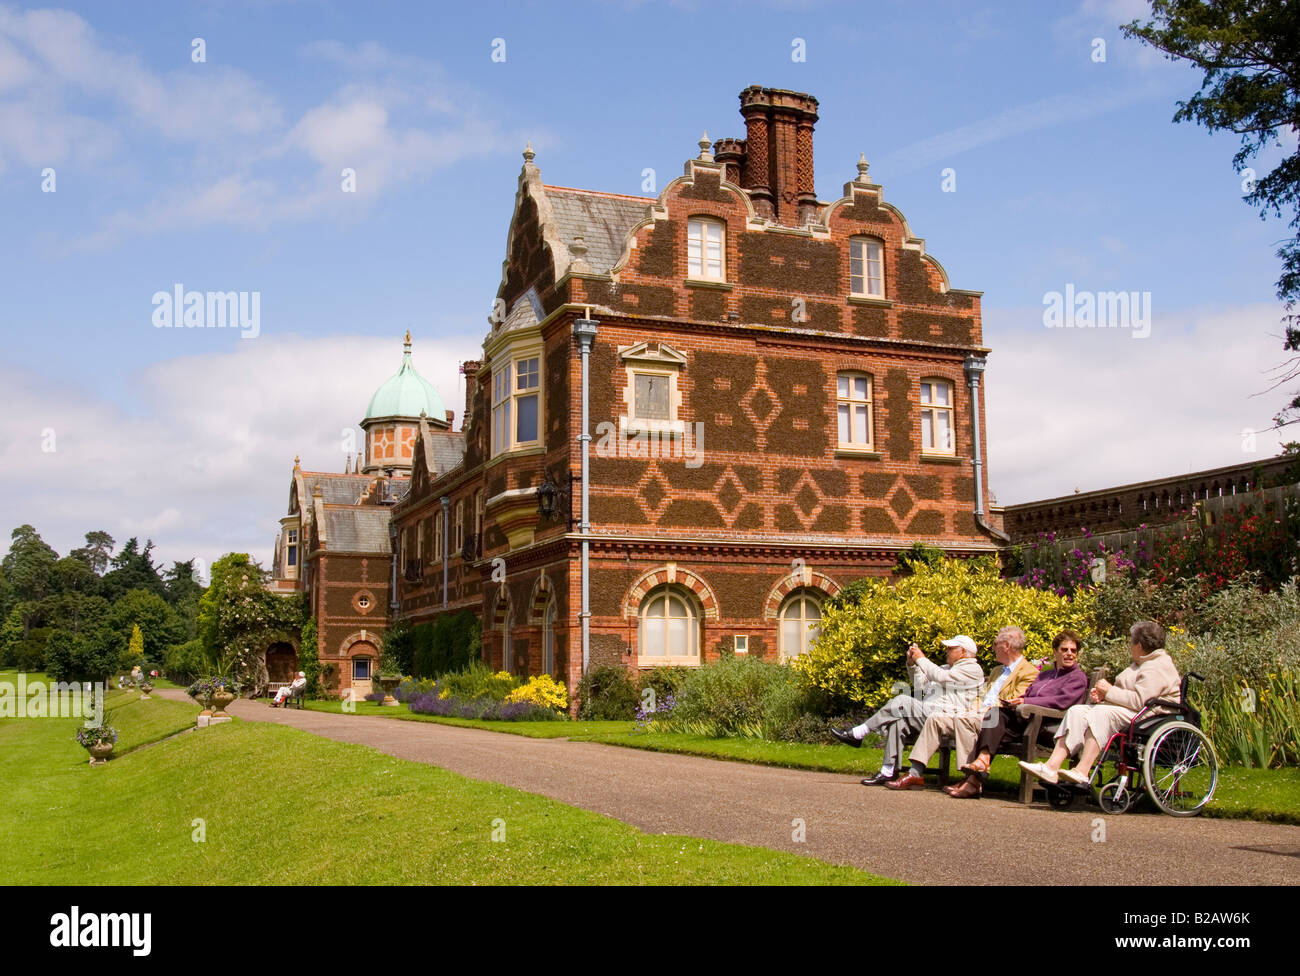 Les personnes âgées profiter de la vue à Sandringham House,Sandringham Estate,Sandringham, Norfolk, Angleterre, Royaume-Uni (retrait de Sa Majesté la Reine) Banque D'Images